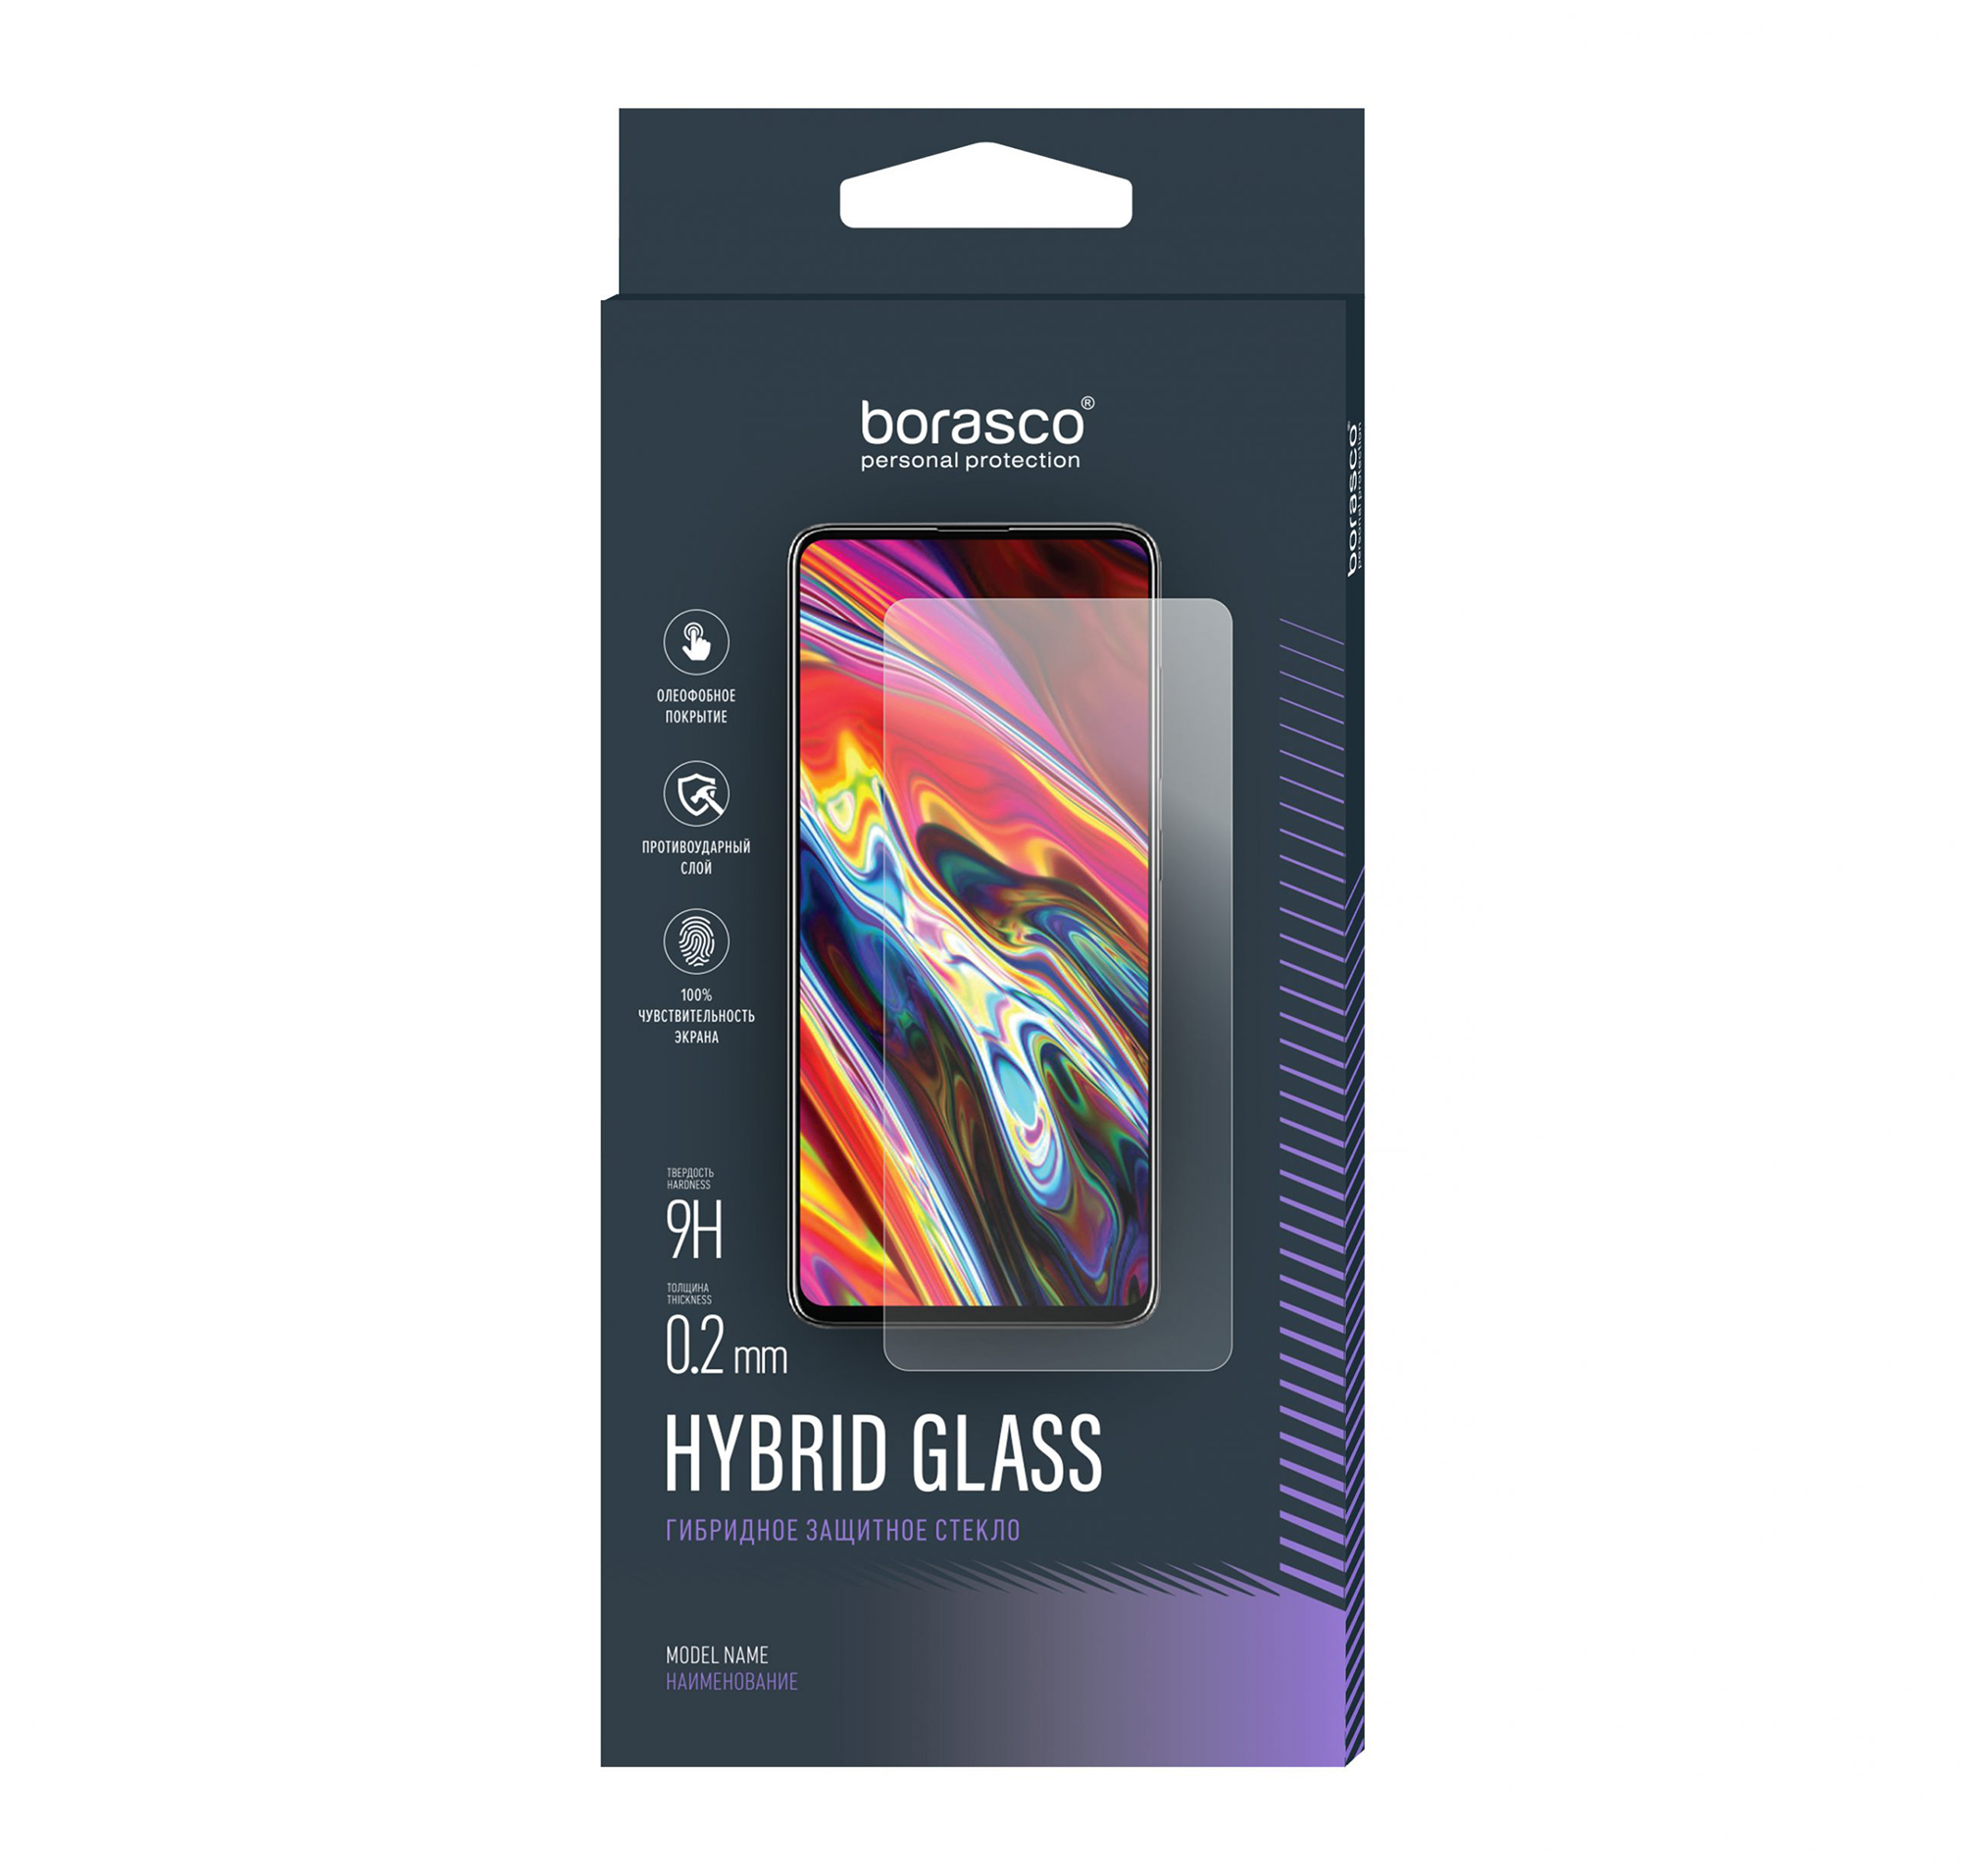 Защитное стекло Hybrid Glass для OPPO Reno 2Z/ Reno 2F простой мягкий прозрачный чехол для телефона чехол для oppo reno 2 z f 2z 2f coque funda reno2 pro прозрачный силиконовый тонкий для друзей и пар из тпу